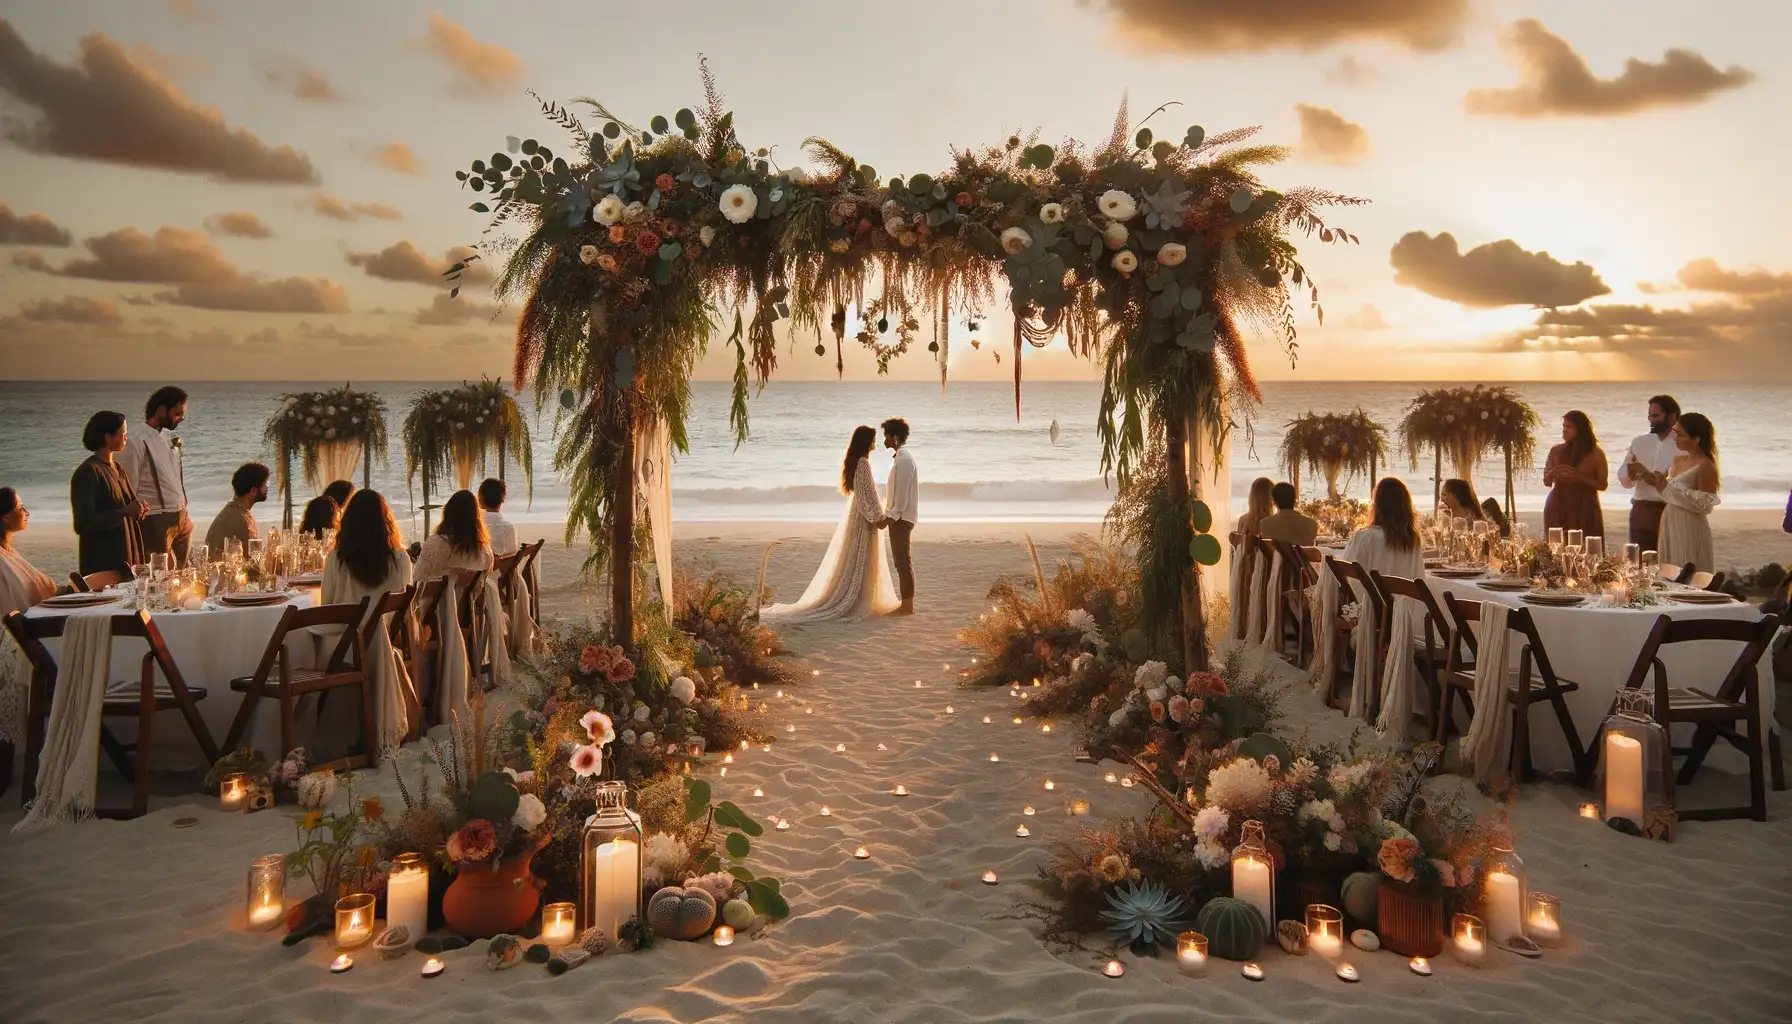 Mejor Una imagen horizontal que muestre una boda bohemia en la playa al atardecer con una decoracion floral abundante incluyendo arcos de boda adornados c